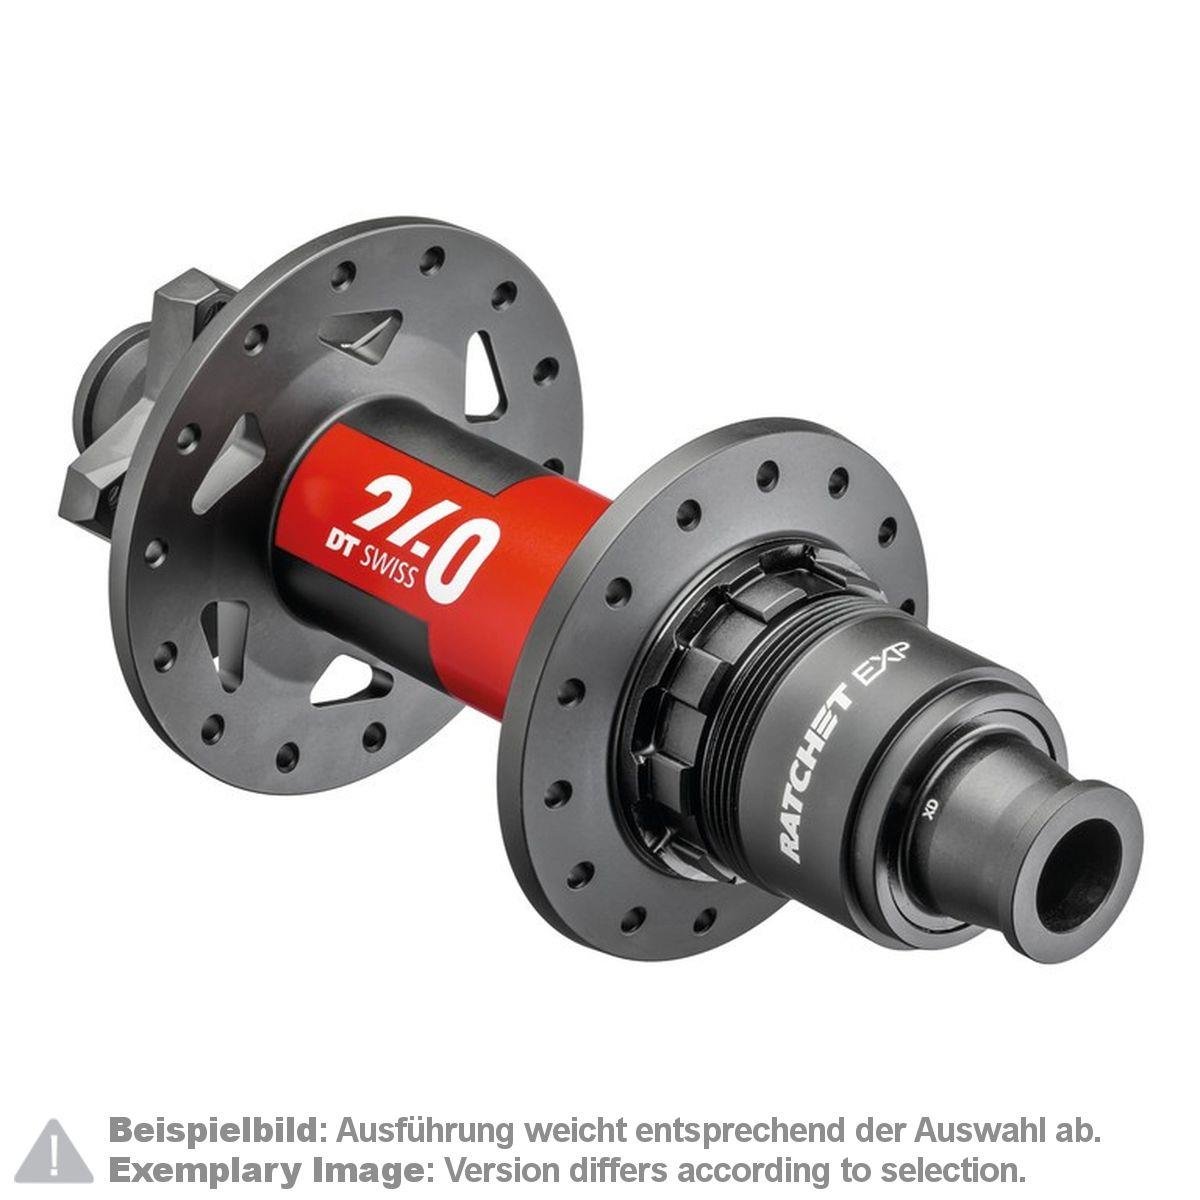 DT Swiss MTB-Nabe Hinterrad 240 EXP 157 mm/12 mm TA (Super Boost Plus), IS 6-Bolt, Sram XD, Schwarz